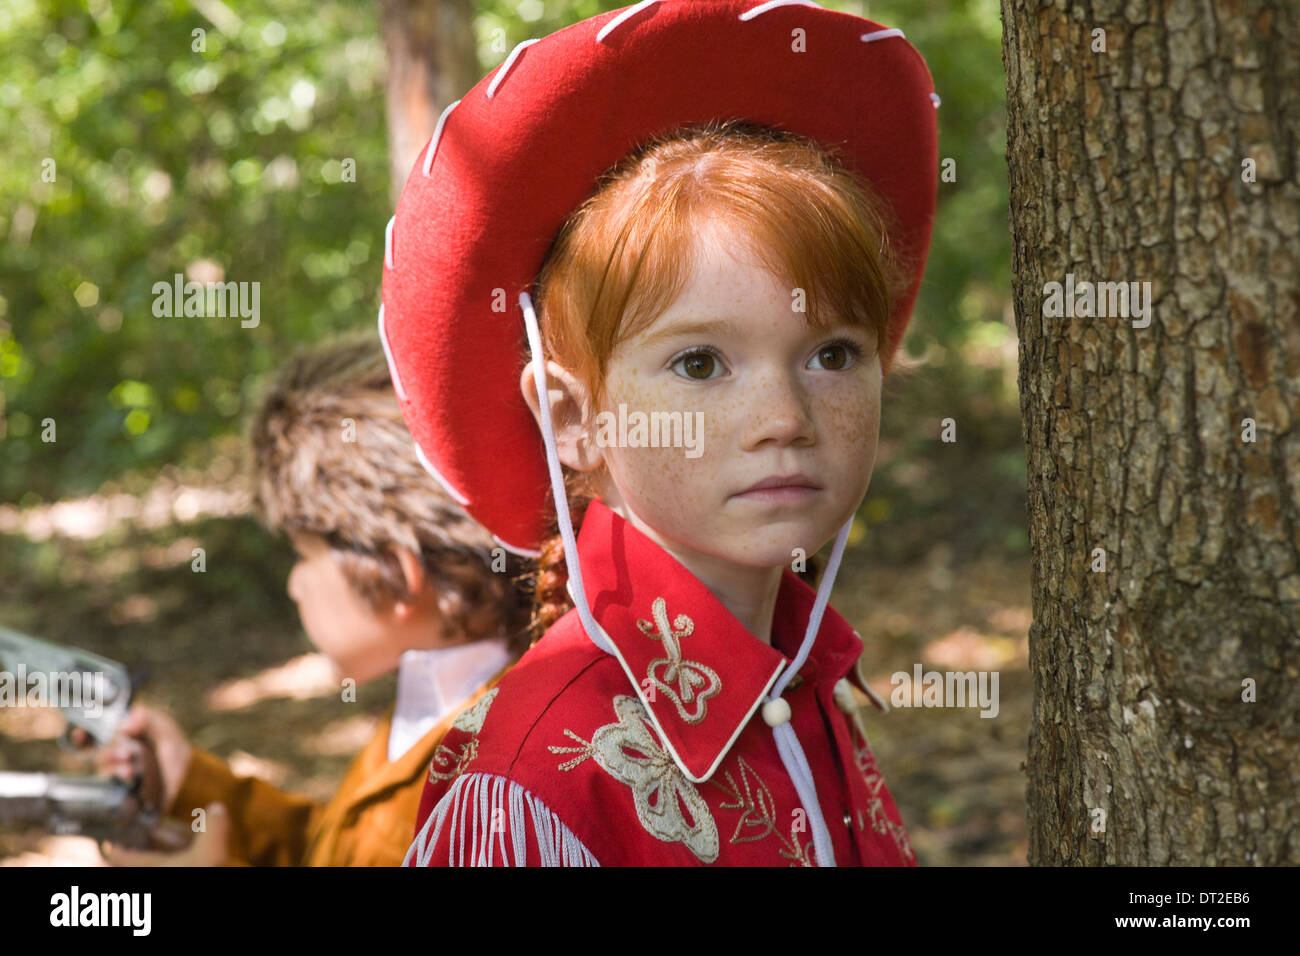 Cowboy suit immagini e fotografie stock ad alta risoluzione - Alamy